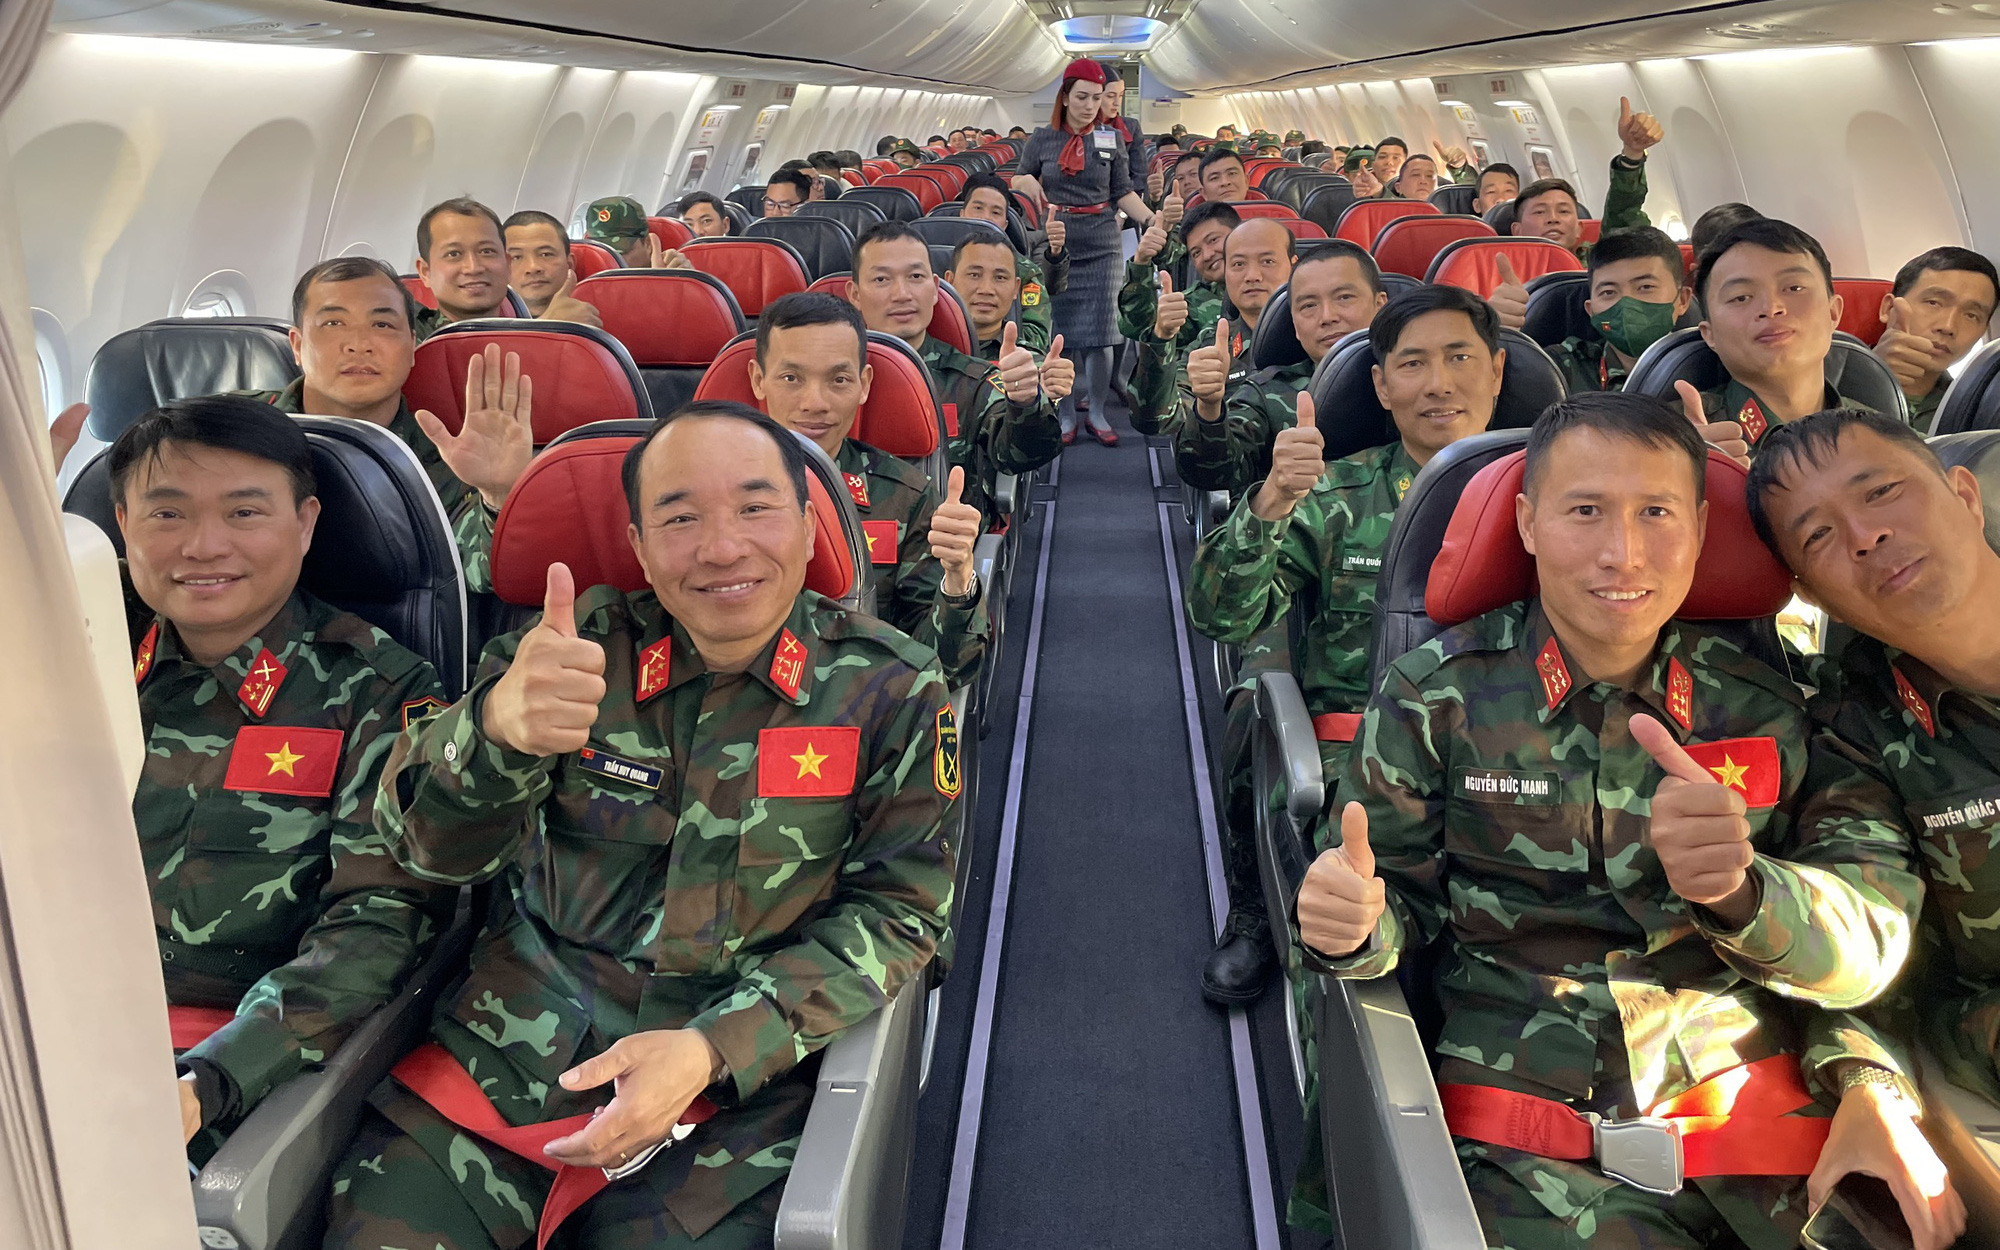 Đoàn Quân đội nhân dân Việt Nam kết thúc nhiệm vụ ở Thổ Nhĩ Kỳ, lên chuyến bay về nước